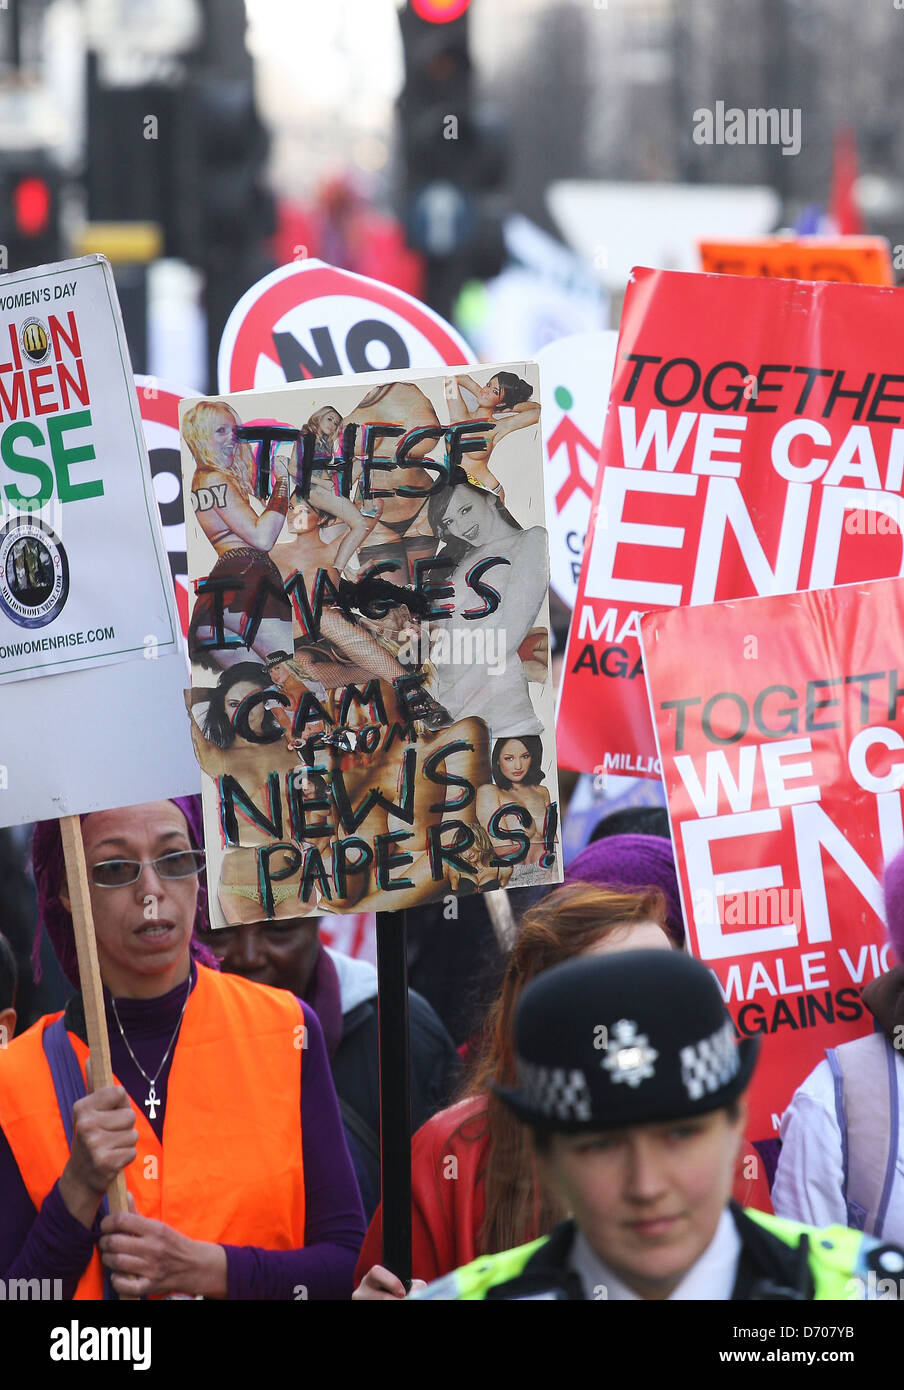 Campagne de manifestants pour les droits des femmes mars sur Oxford Street à Londres, Angleterre - 03.03.12 Banque D'Images